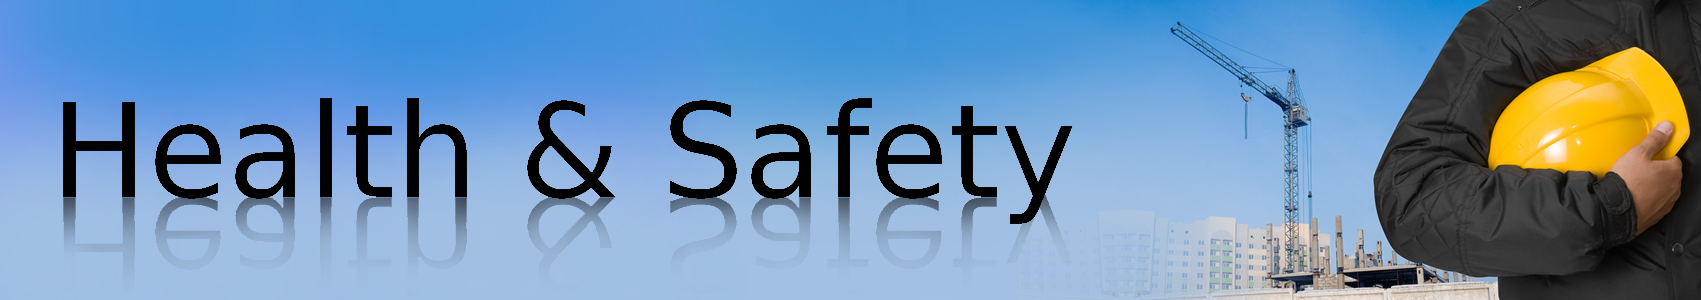 health_safety_banner